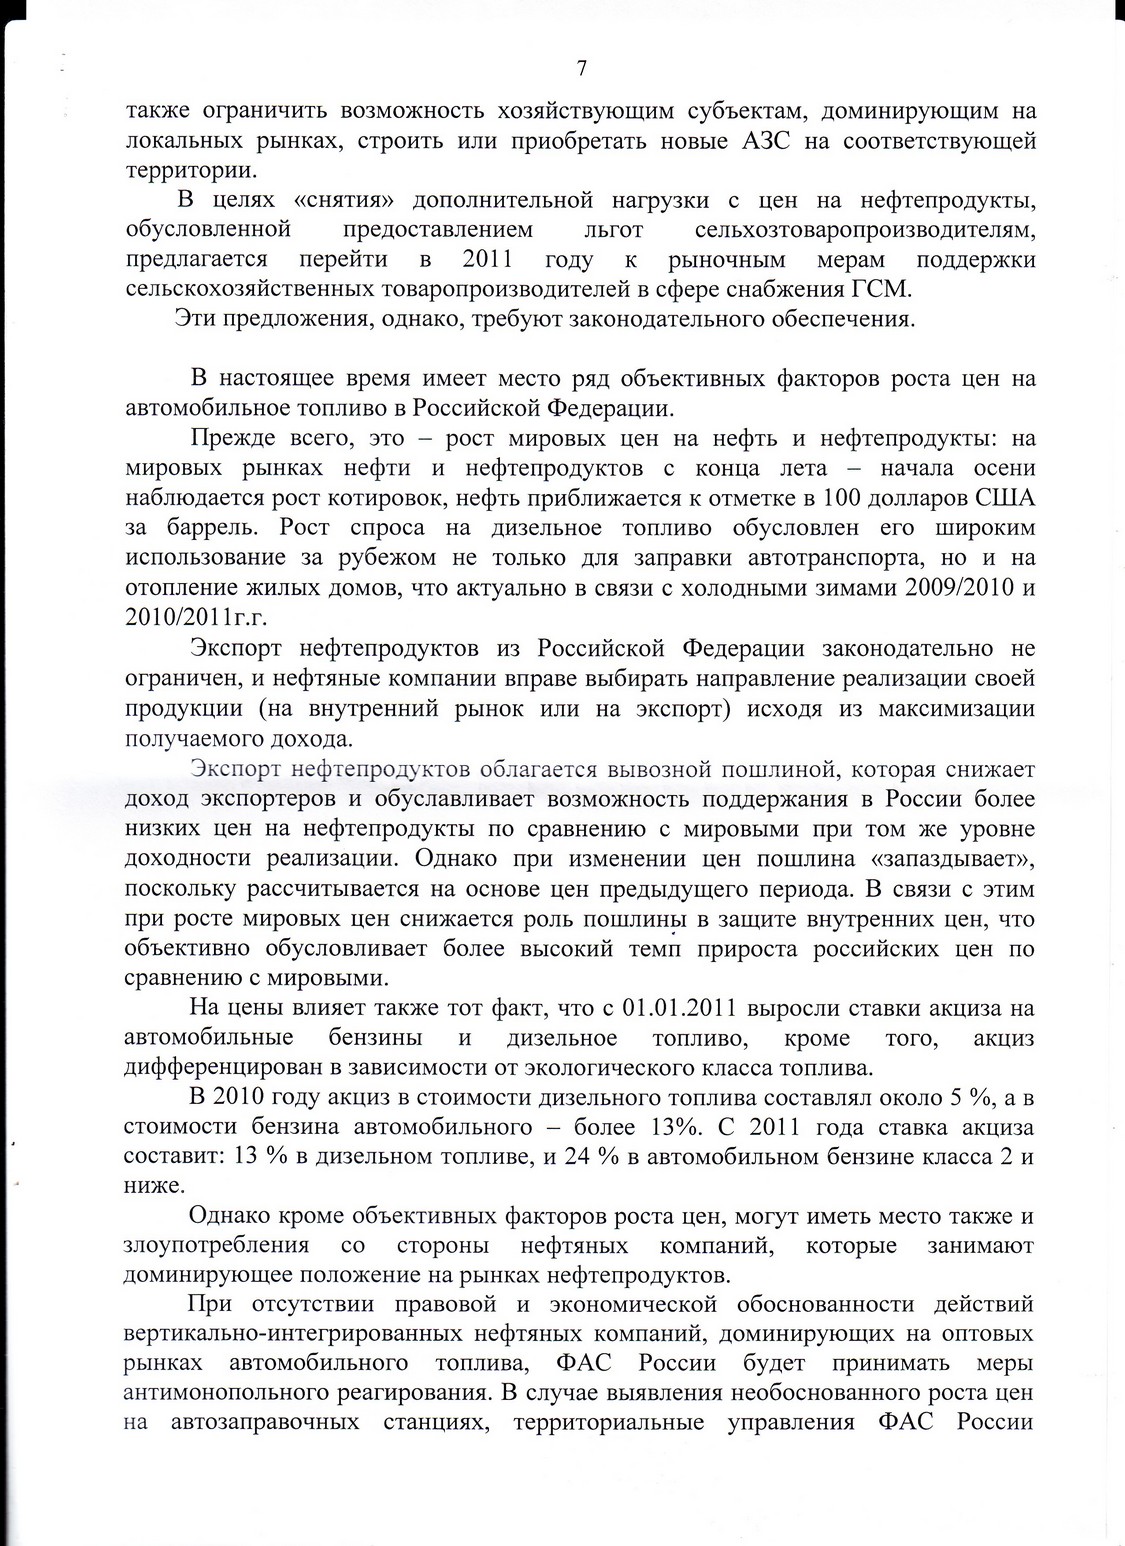 Ответ ФАС Росии на наше обращение по поводу резкого повышения цен на ДТ. страница 7